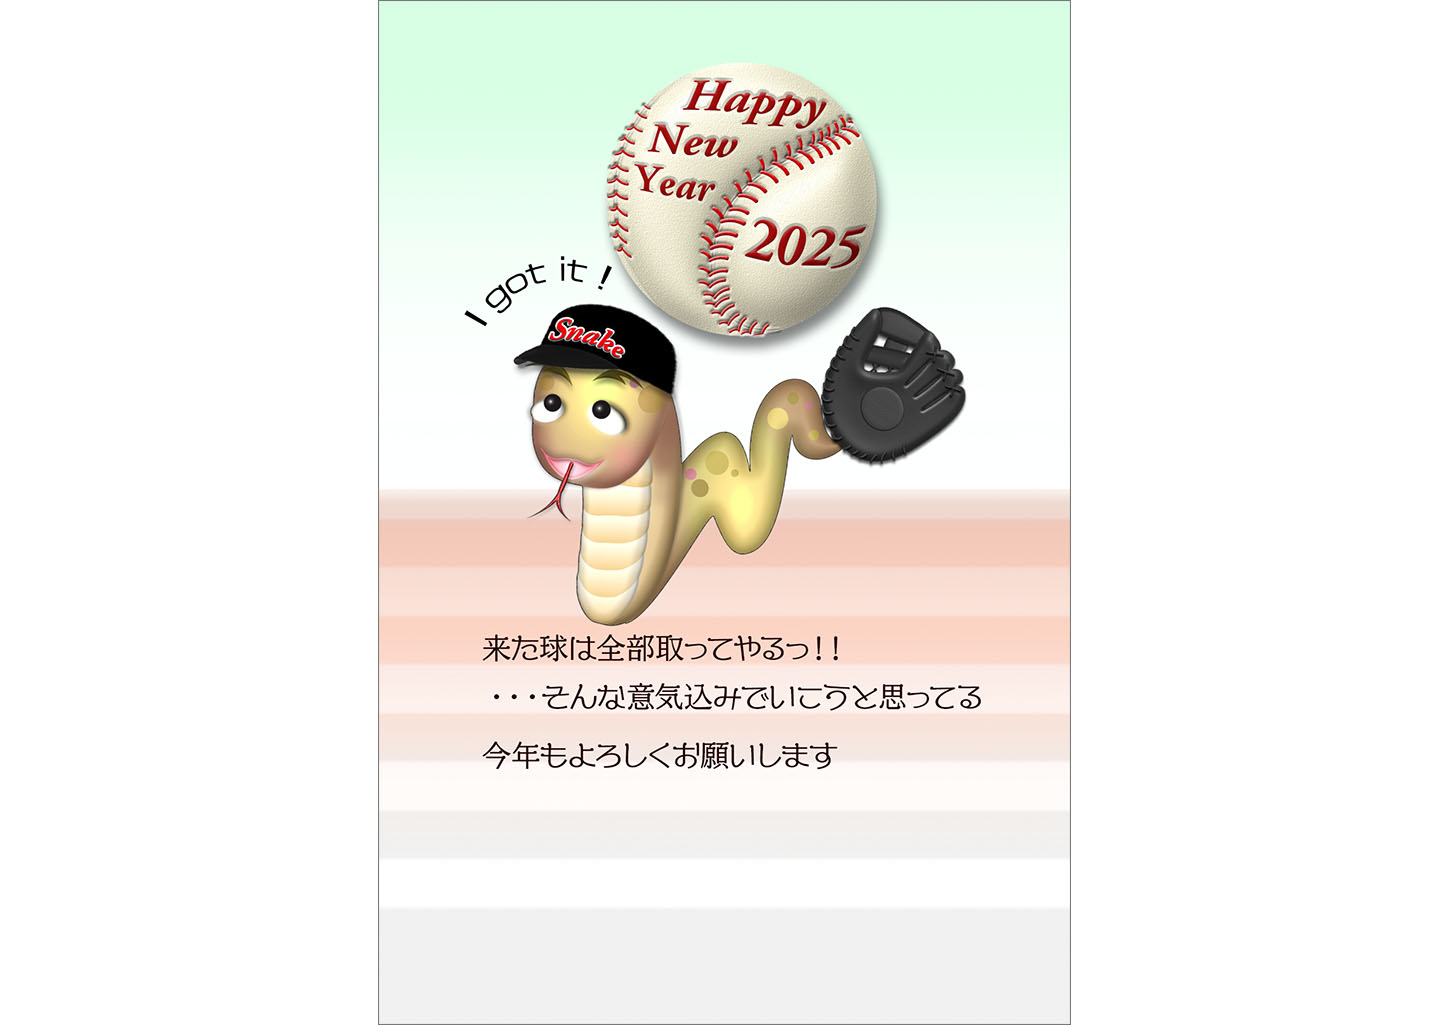 蛇の野球選手がI got it !のテンプレート｜かわいい年賀状デザイン素材